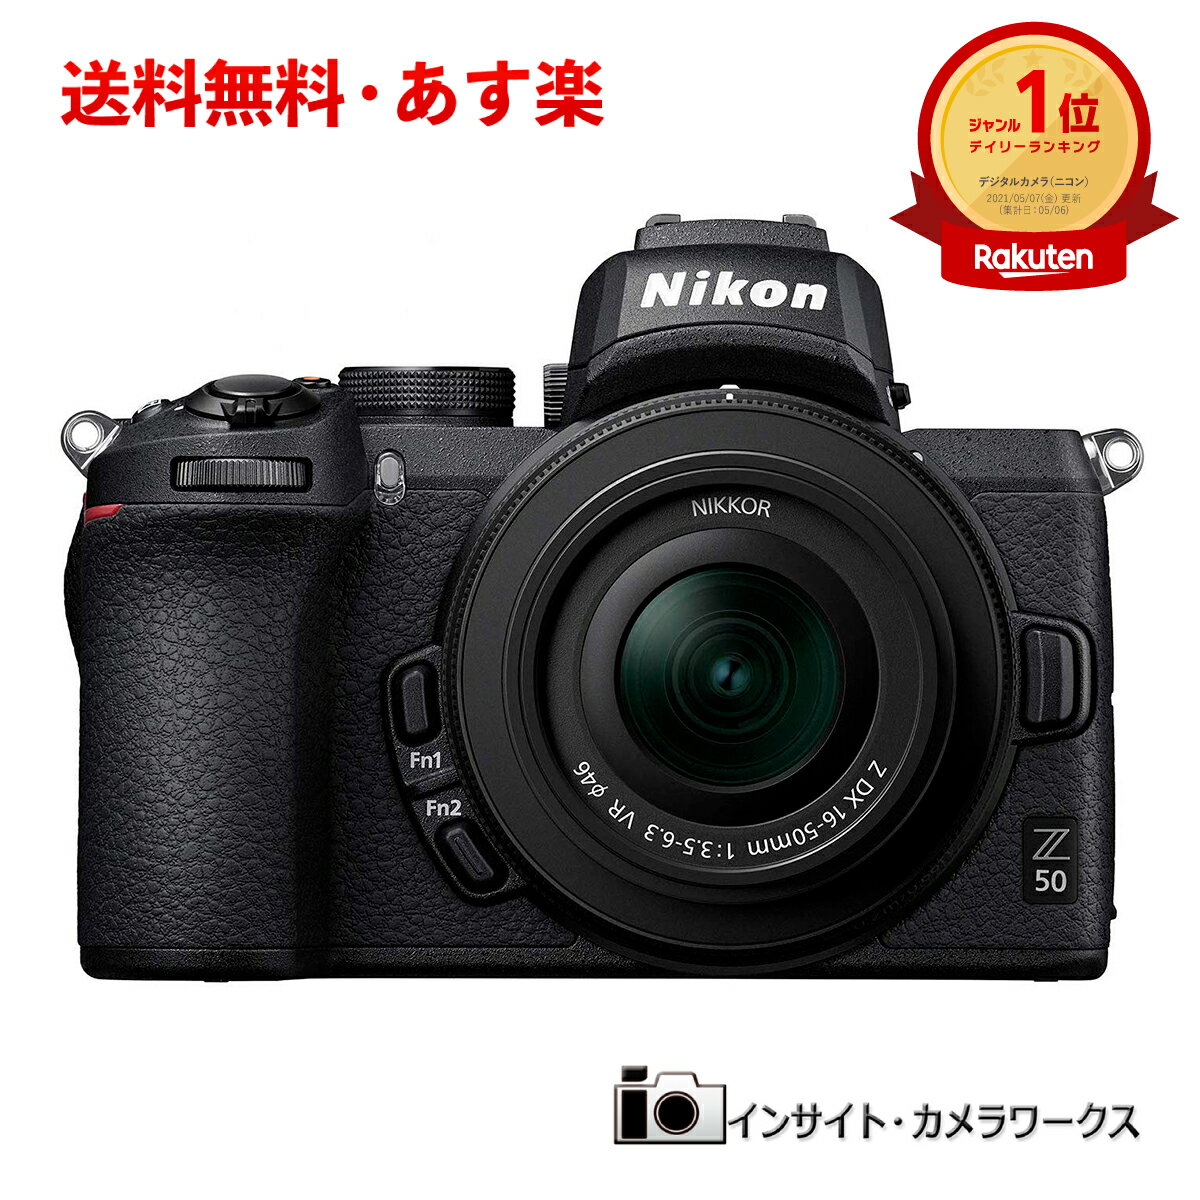 ニコン Z50 レンズキット NIKKOR Z DX 16-50mm f/3.5-6.3 VR付属 ミラーレス一眼カメラ Nikon